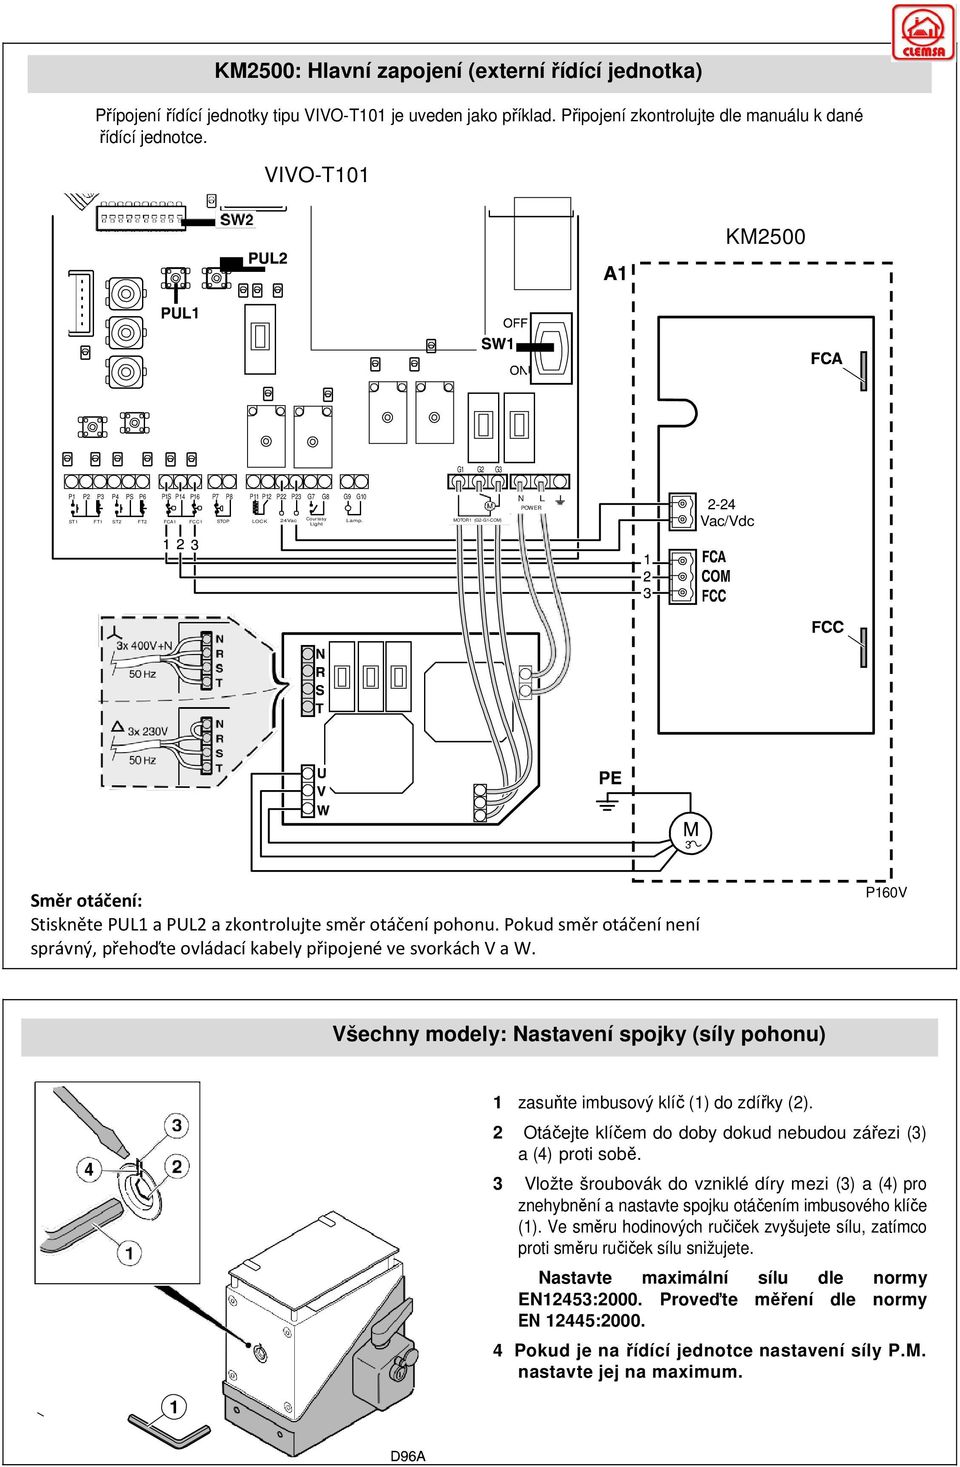 MOTOR1 (G2-G1-COM) Vac/Vdc 3 Směr otáčení: Stiskněte PUL1 a PUL2 a zkontrolujte směr otáčení pohonu. Pokud směr otáčení není správný, přehoďte ovládací kabely připojené ve svorkách V a W.